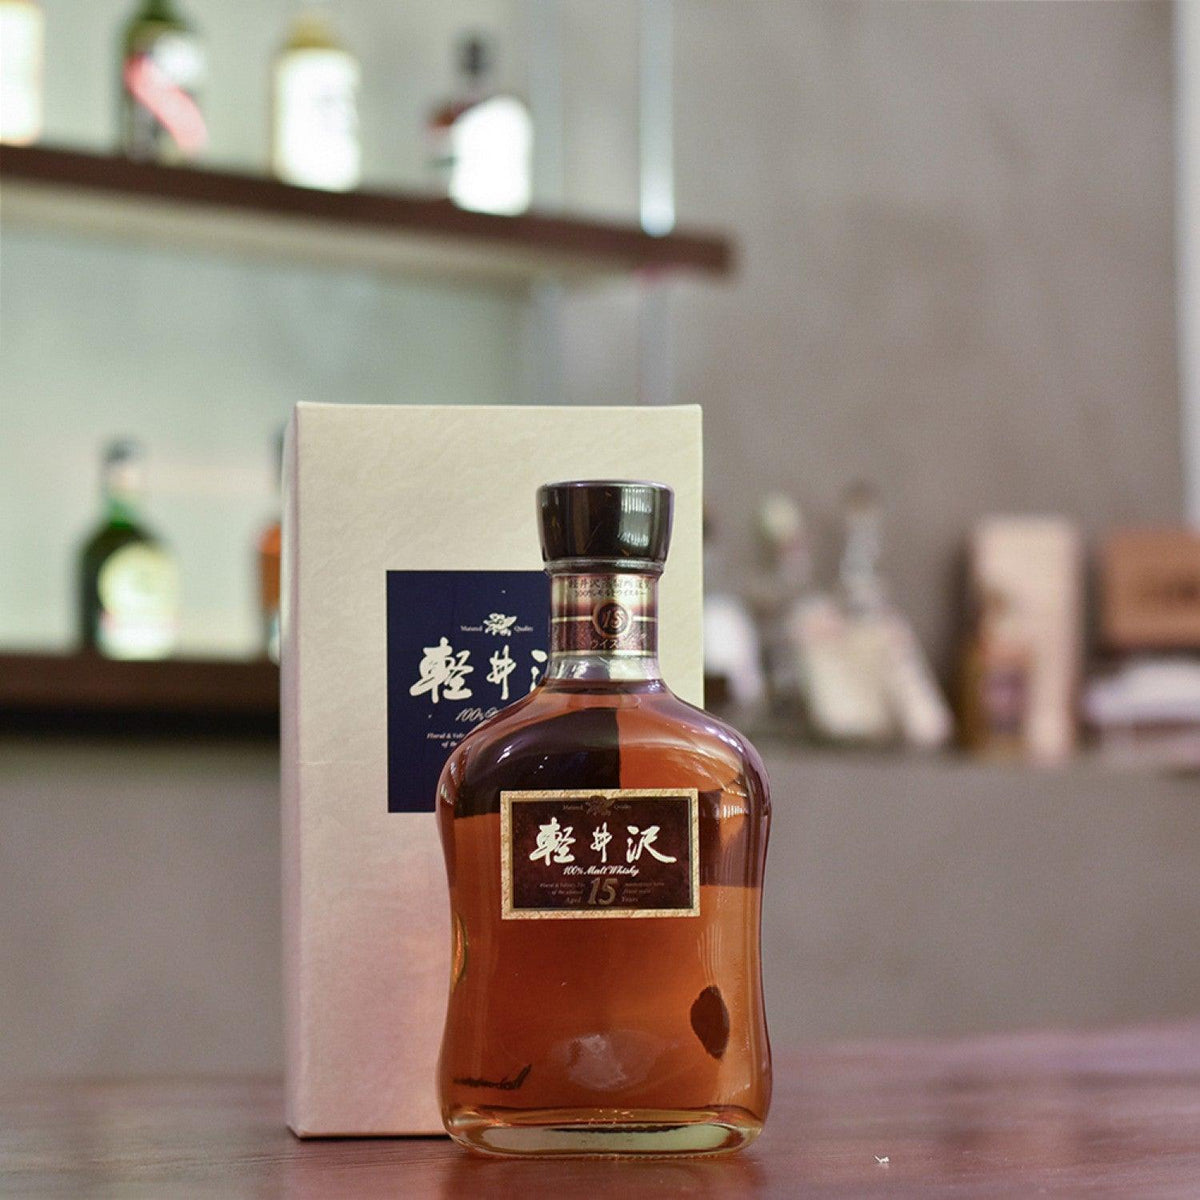 輕井澤 Karuizawa 15 Year Old 100% Malt Whisky - The Rare Malt